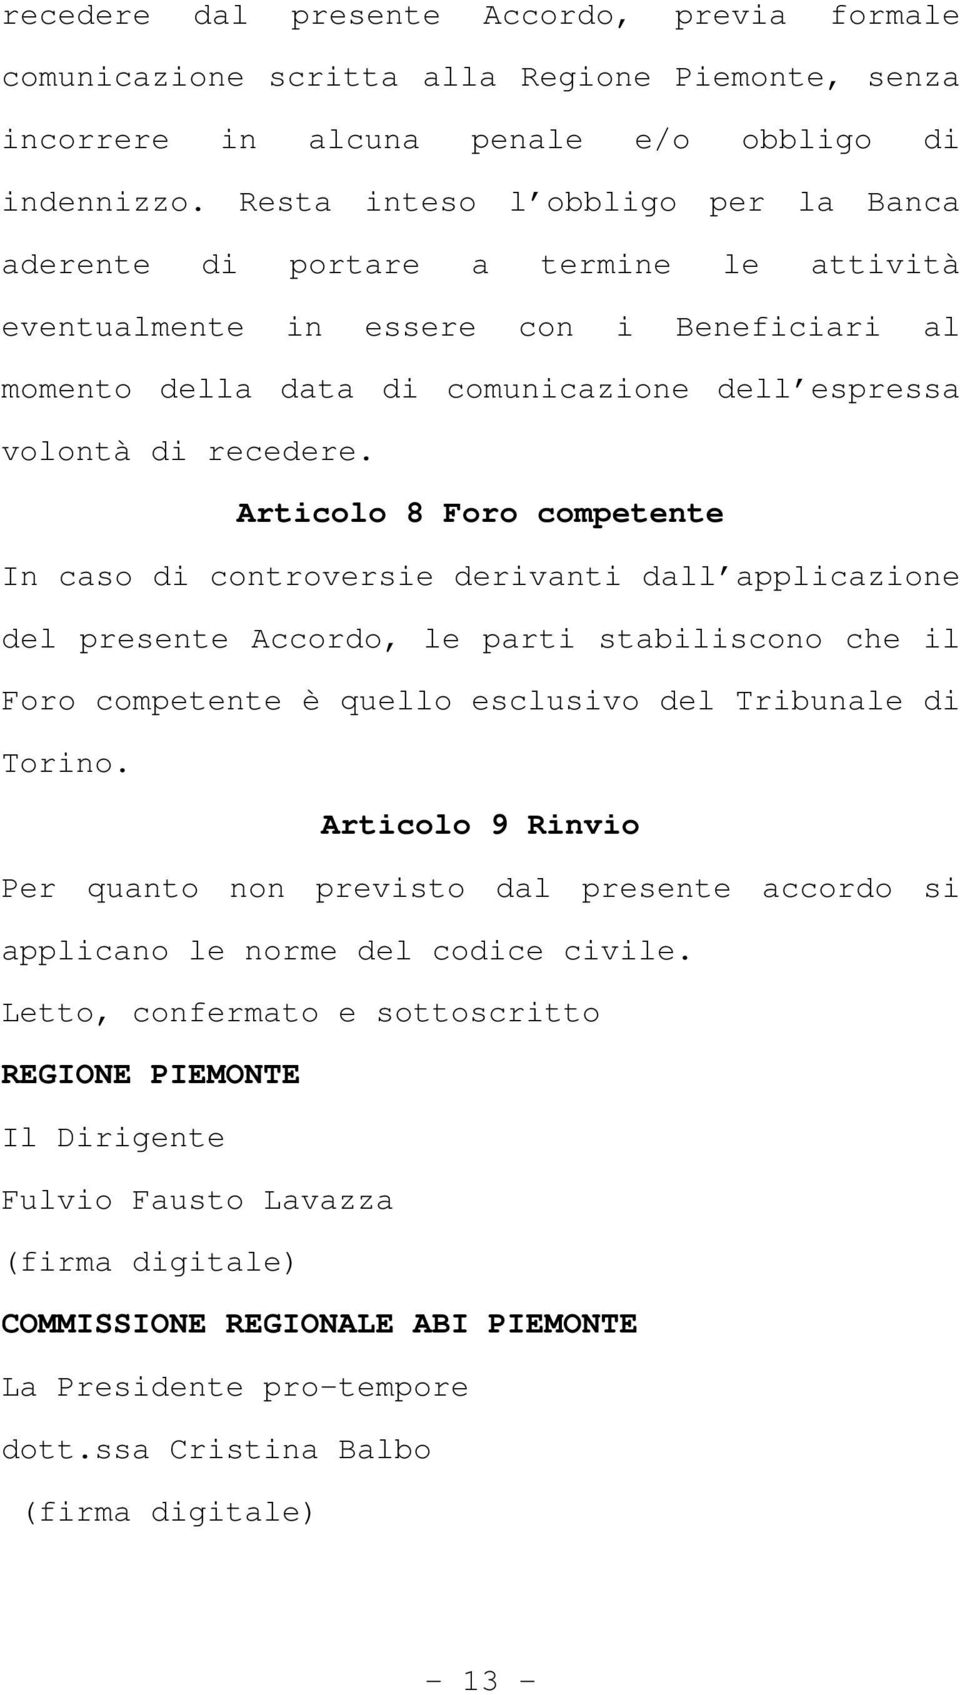 Articolo 8 Foro competente In caso di controversie derivanti dall applicazione del presente Accordo, le parti stabiliscono che il Foro competente è quello esclusivo del Tribunale di Torino.